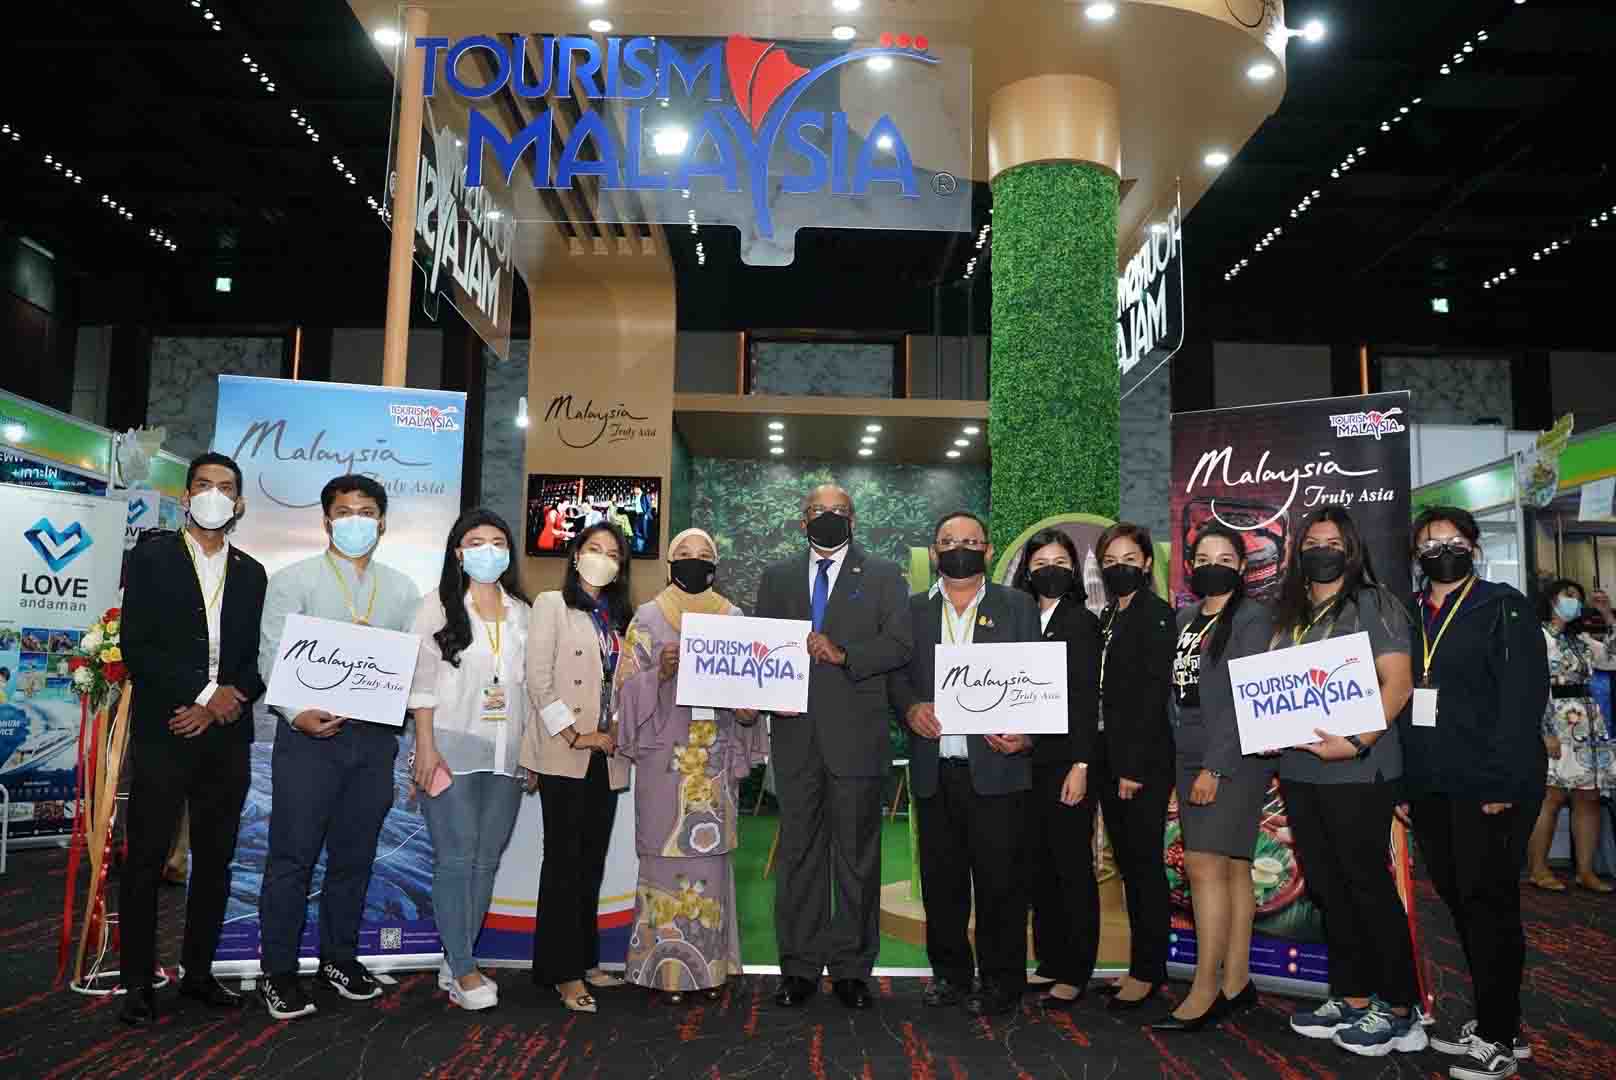 การท่องเที่ยวมาเลเซียประจำประเทศไทยเข้าร่วมงานเที่ยวทั่วไทย สไตล์พรีเมียม ครั้งที่ 27 (TITF #27)